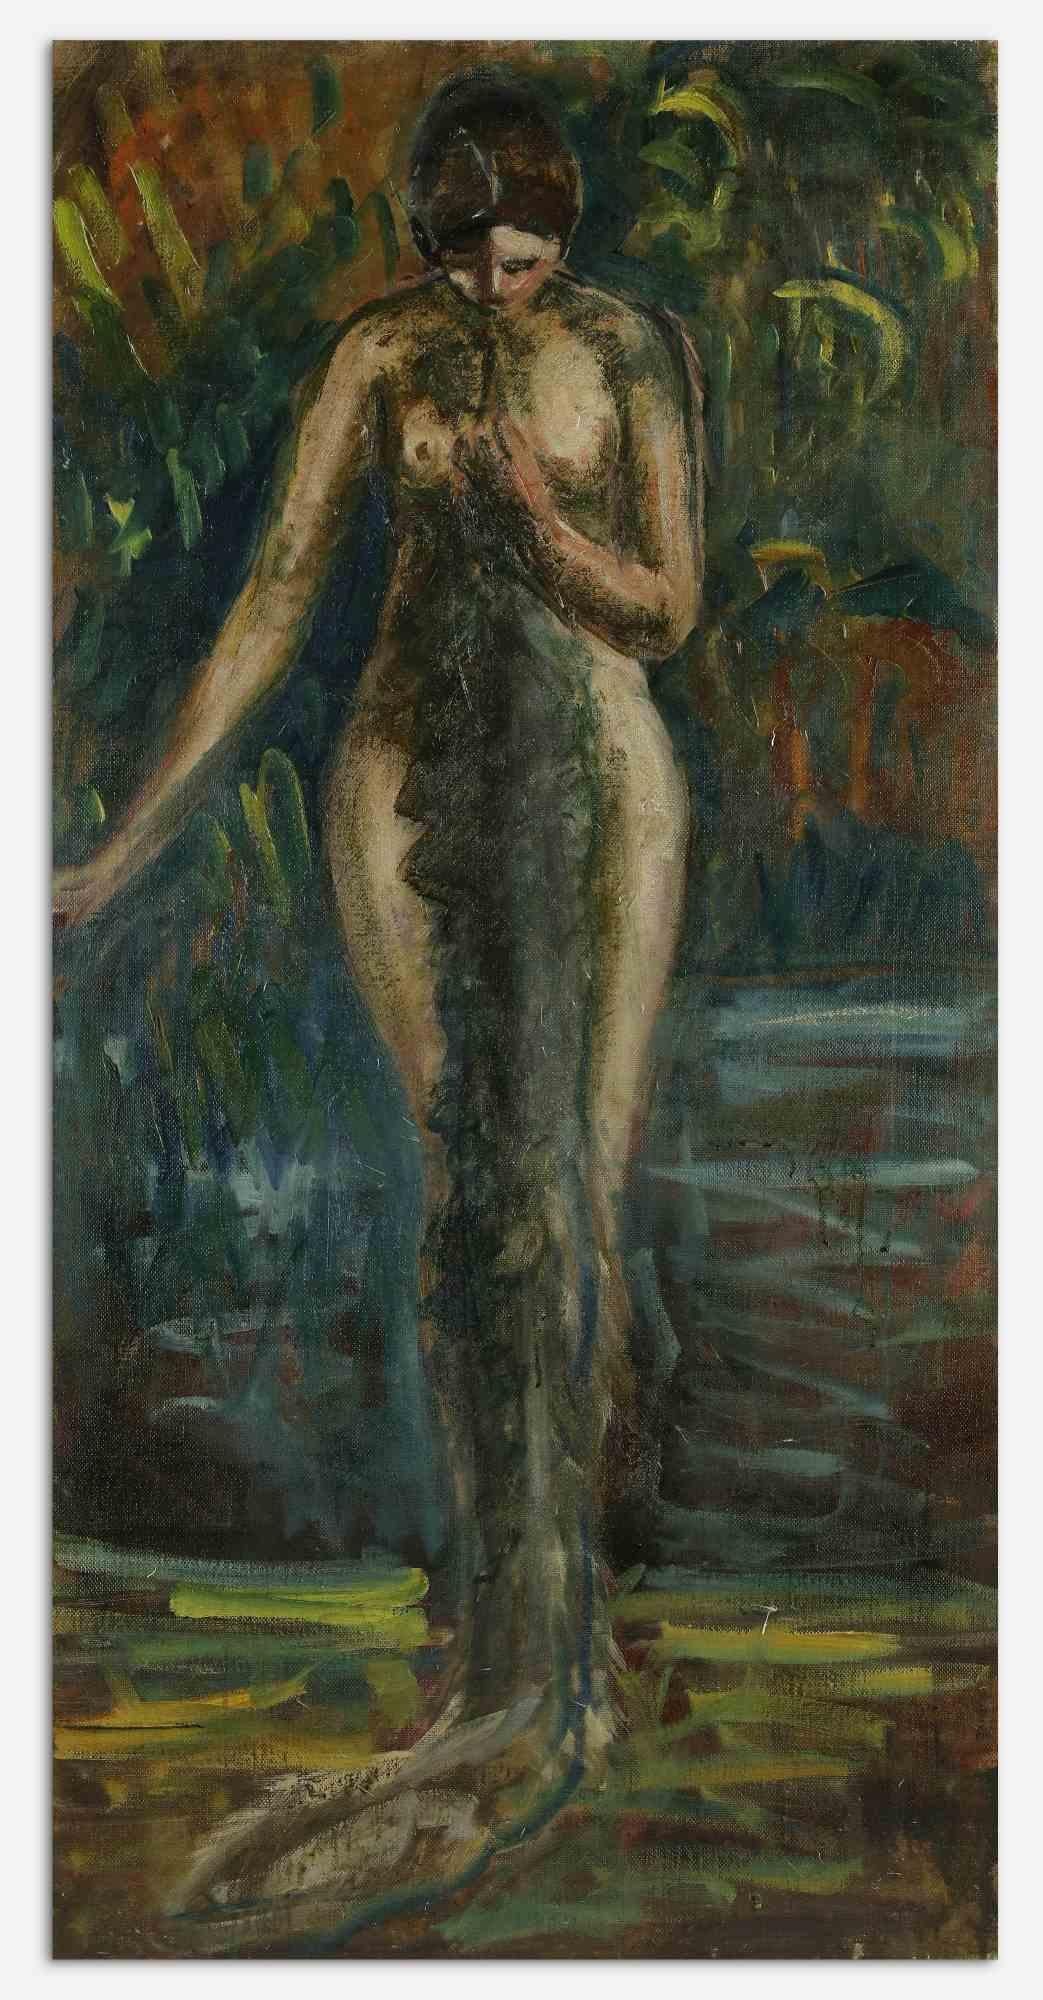 Die Frau im Wald ist ein modernes Original-Kunstwerk von Antonio Feltrinelli aus den 1930er Jahren
Gemischte farbige Ölgemälde auf Leinwand.

Nicht unterzeichnet.

Antonio Feltrinelli (Mailand, 1887 - Gargnano, 1942)

Er wurde am 1. Juni 1887 in